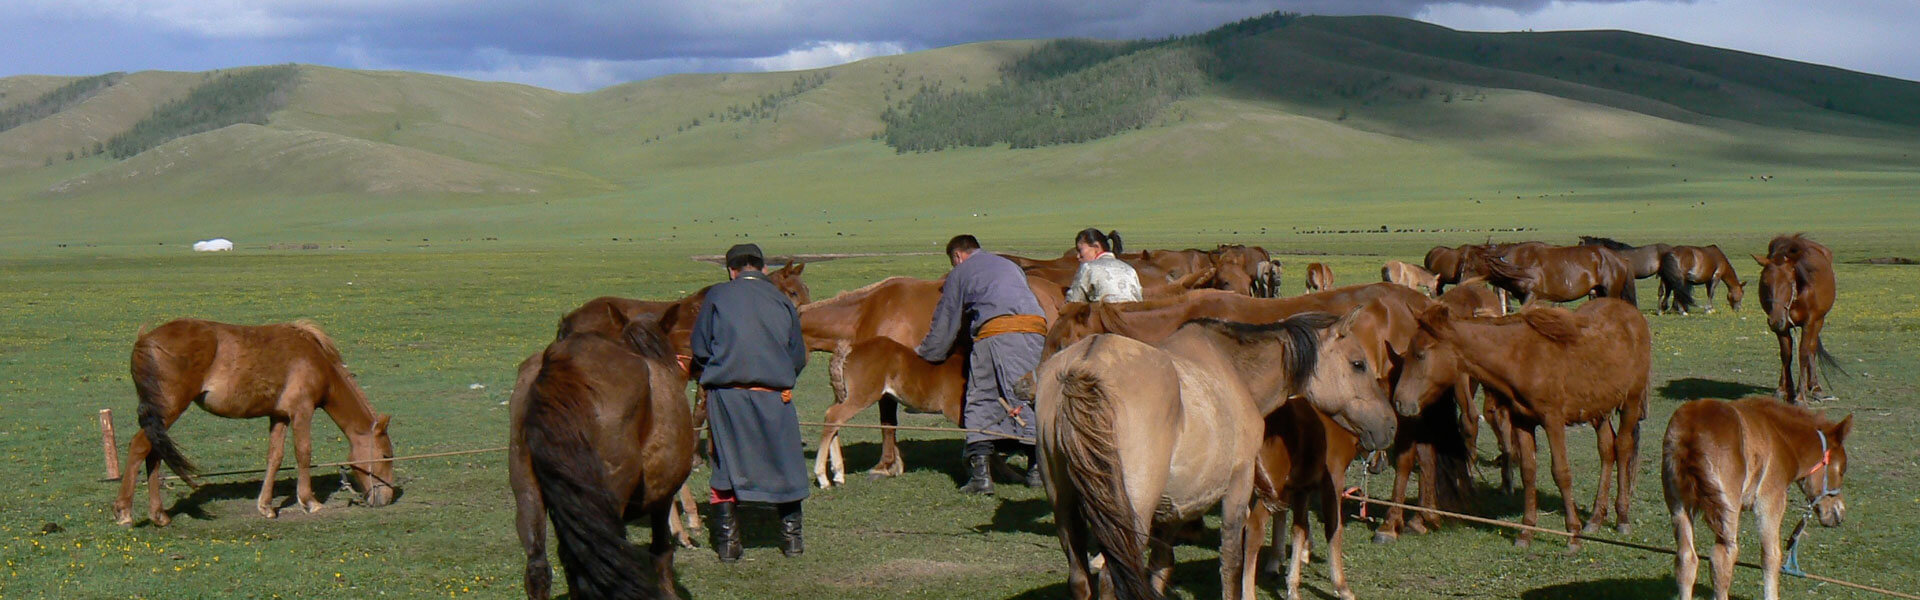 Mongolie Festival reis